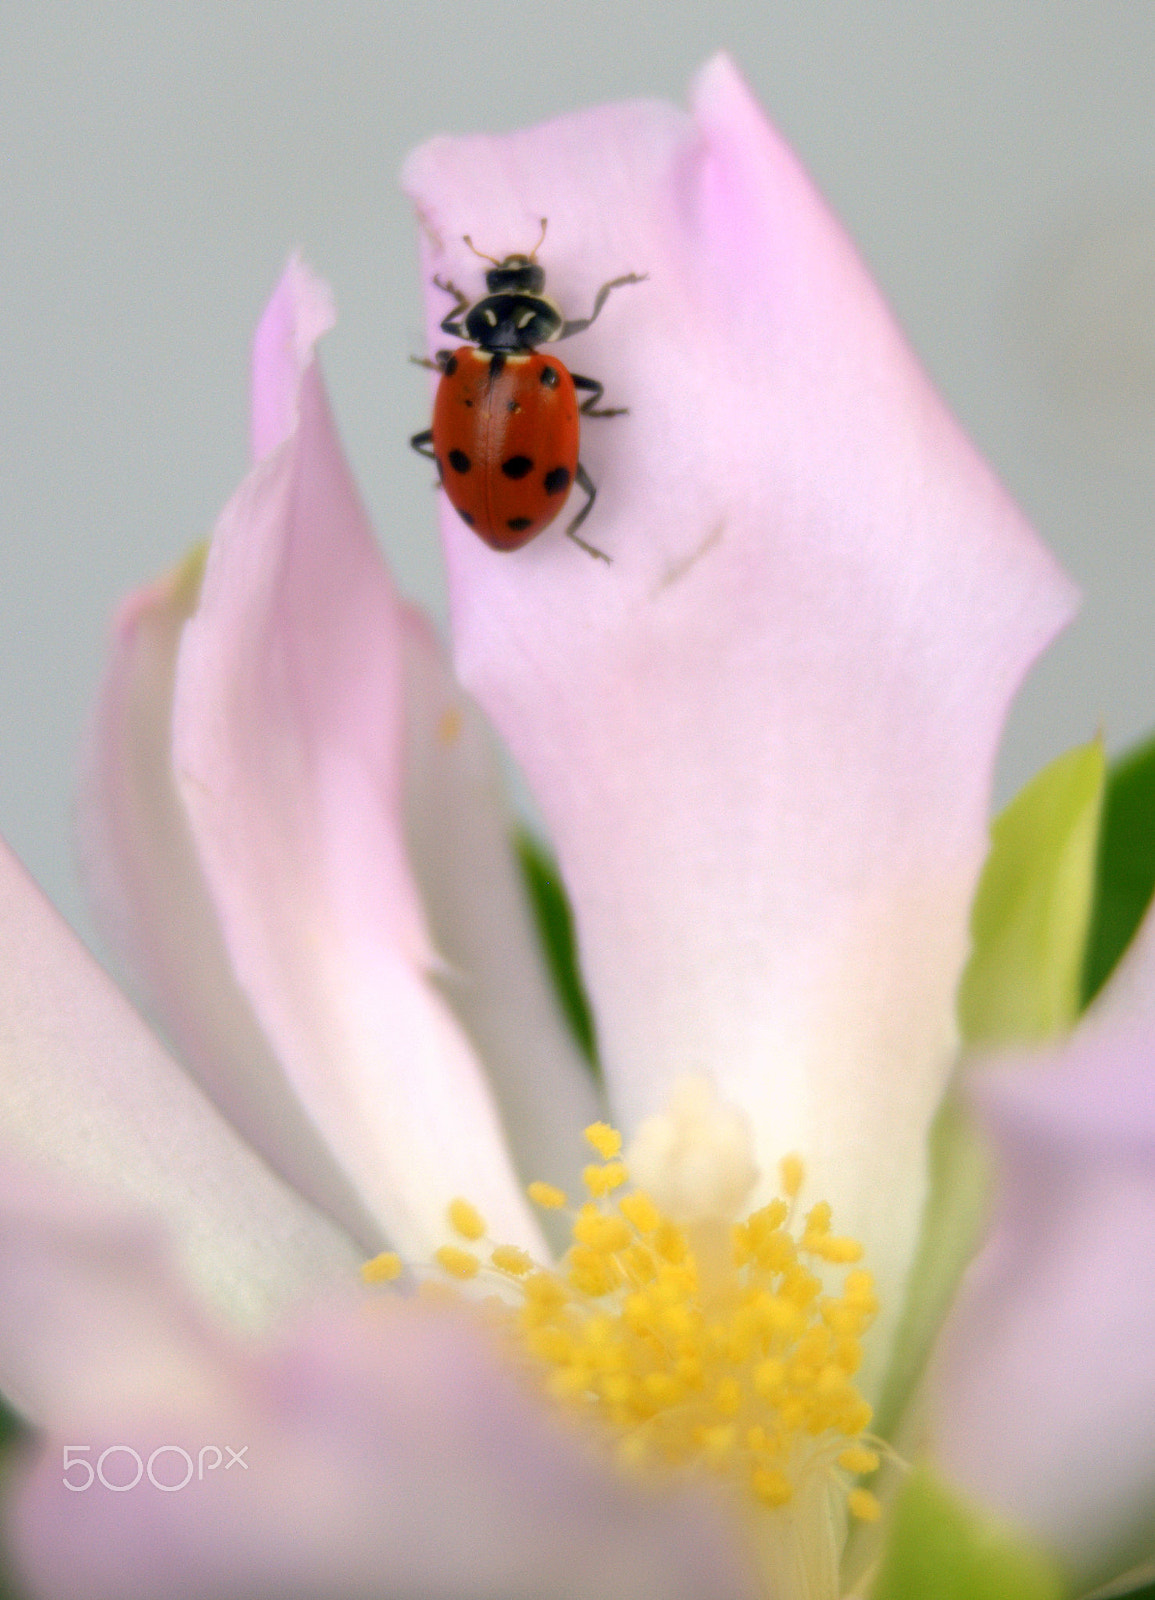 Sigma 28-90mm F3.5-5.6 Macro sample photo. Ladybug on pereskia cactus flower photography